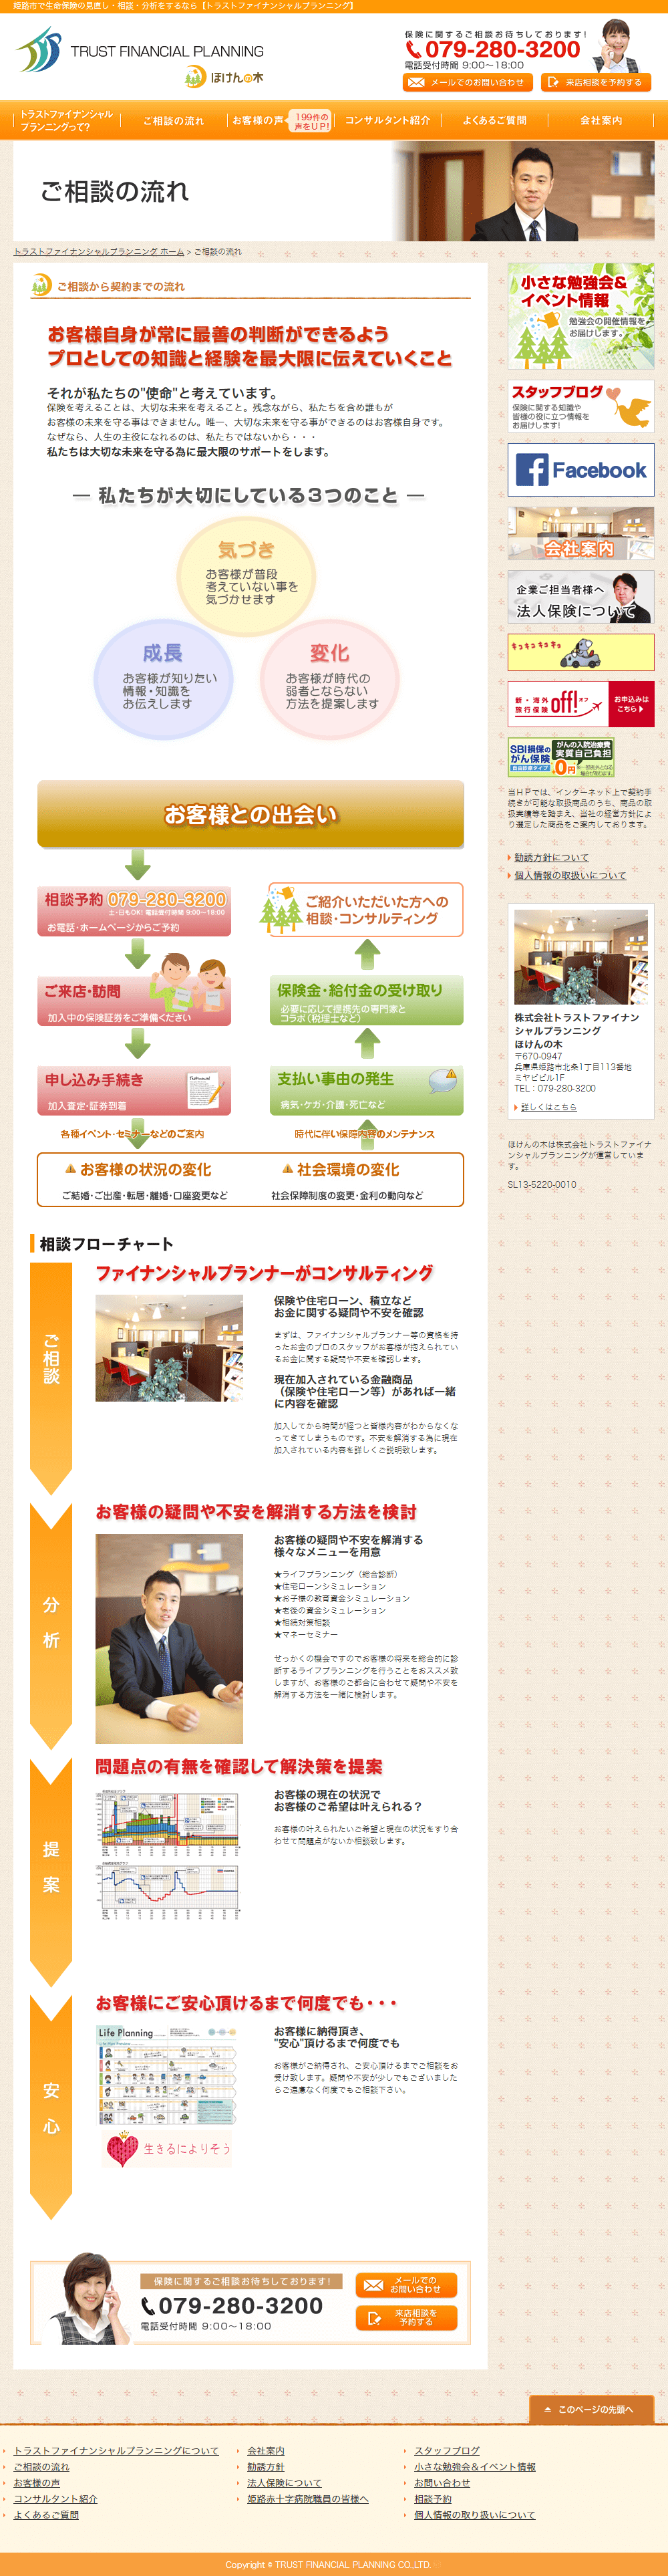 姫路市　株式会社トラストファイナンシャルプランニング様　ホームページ制作　2